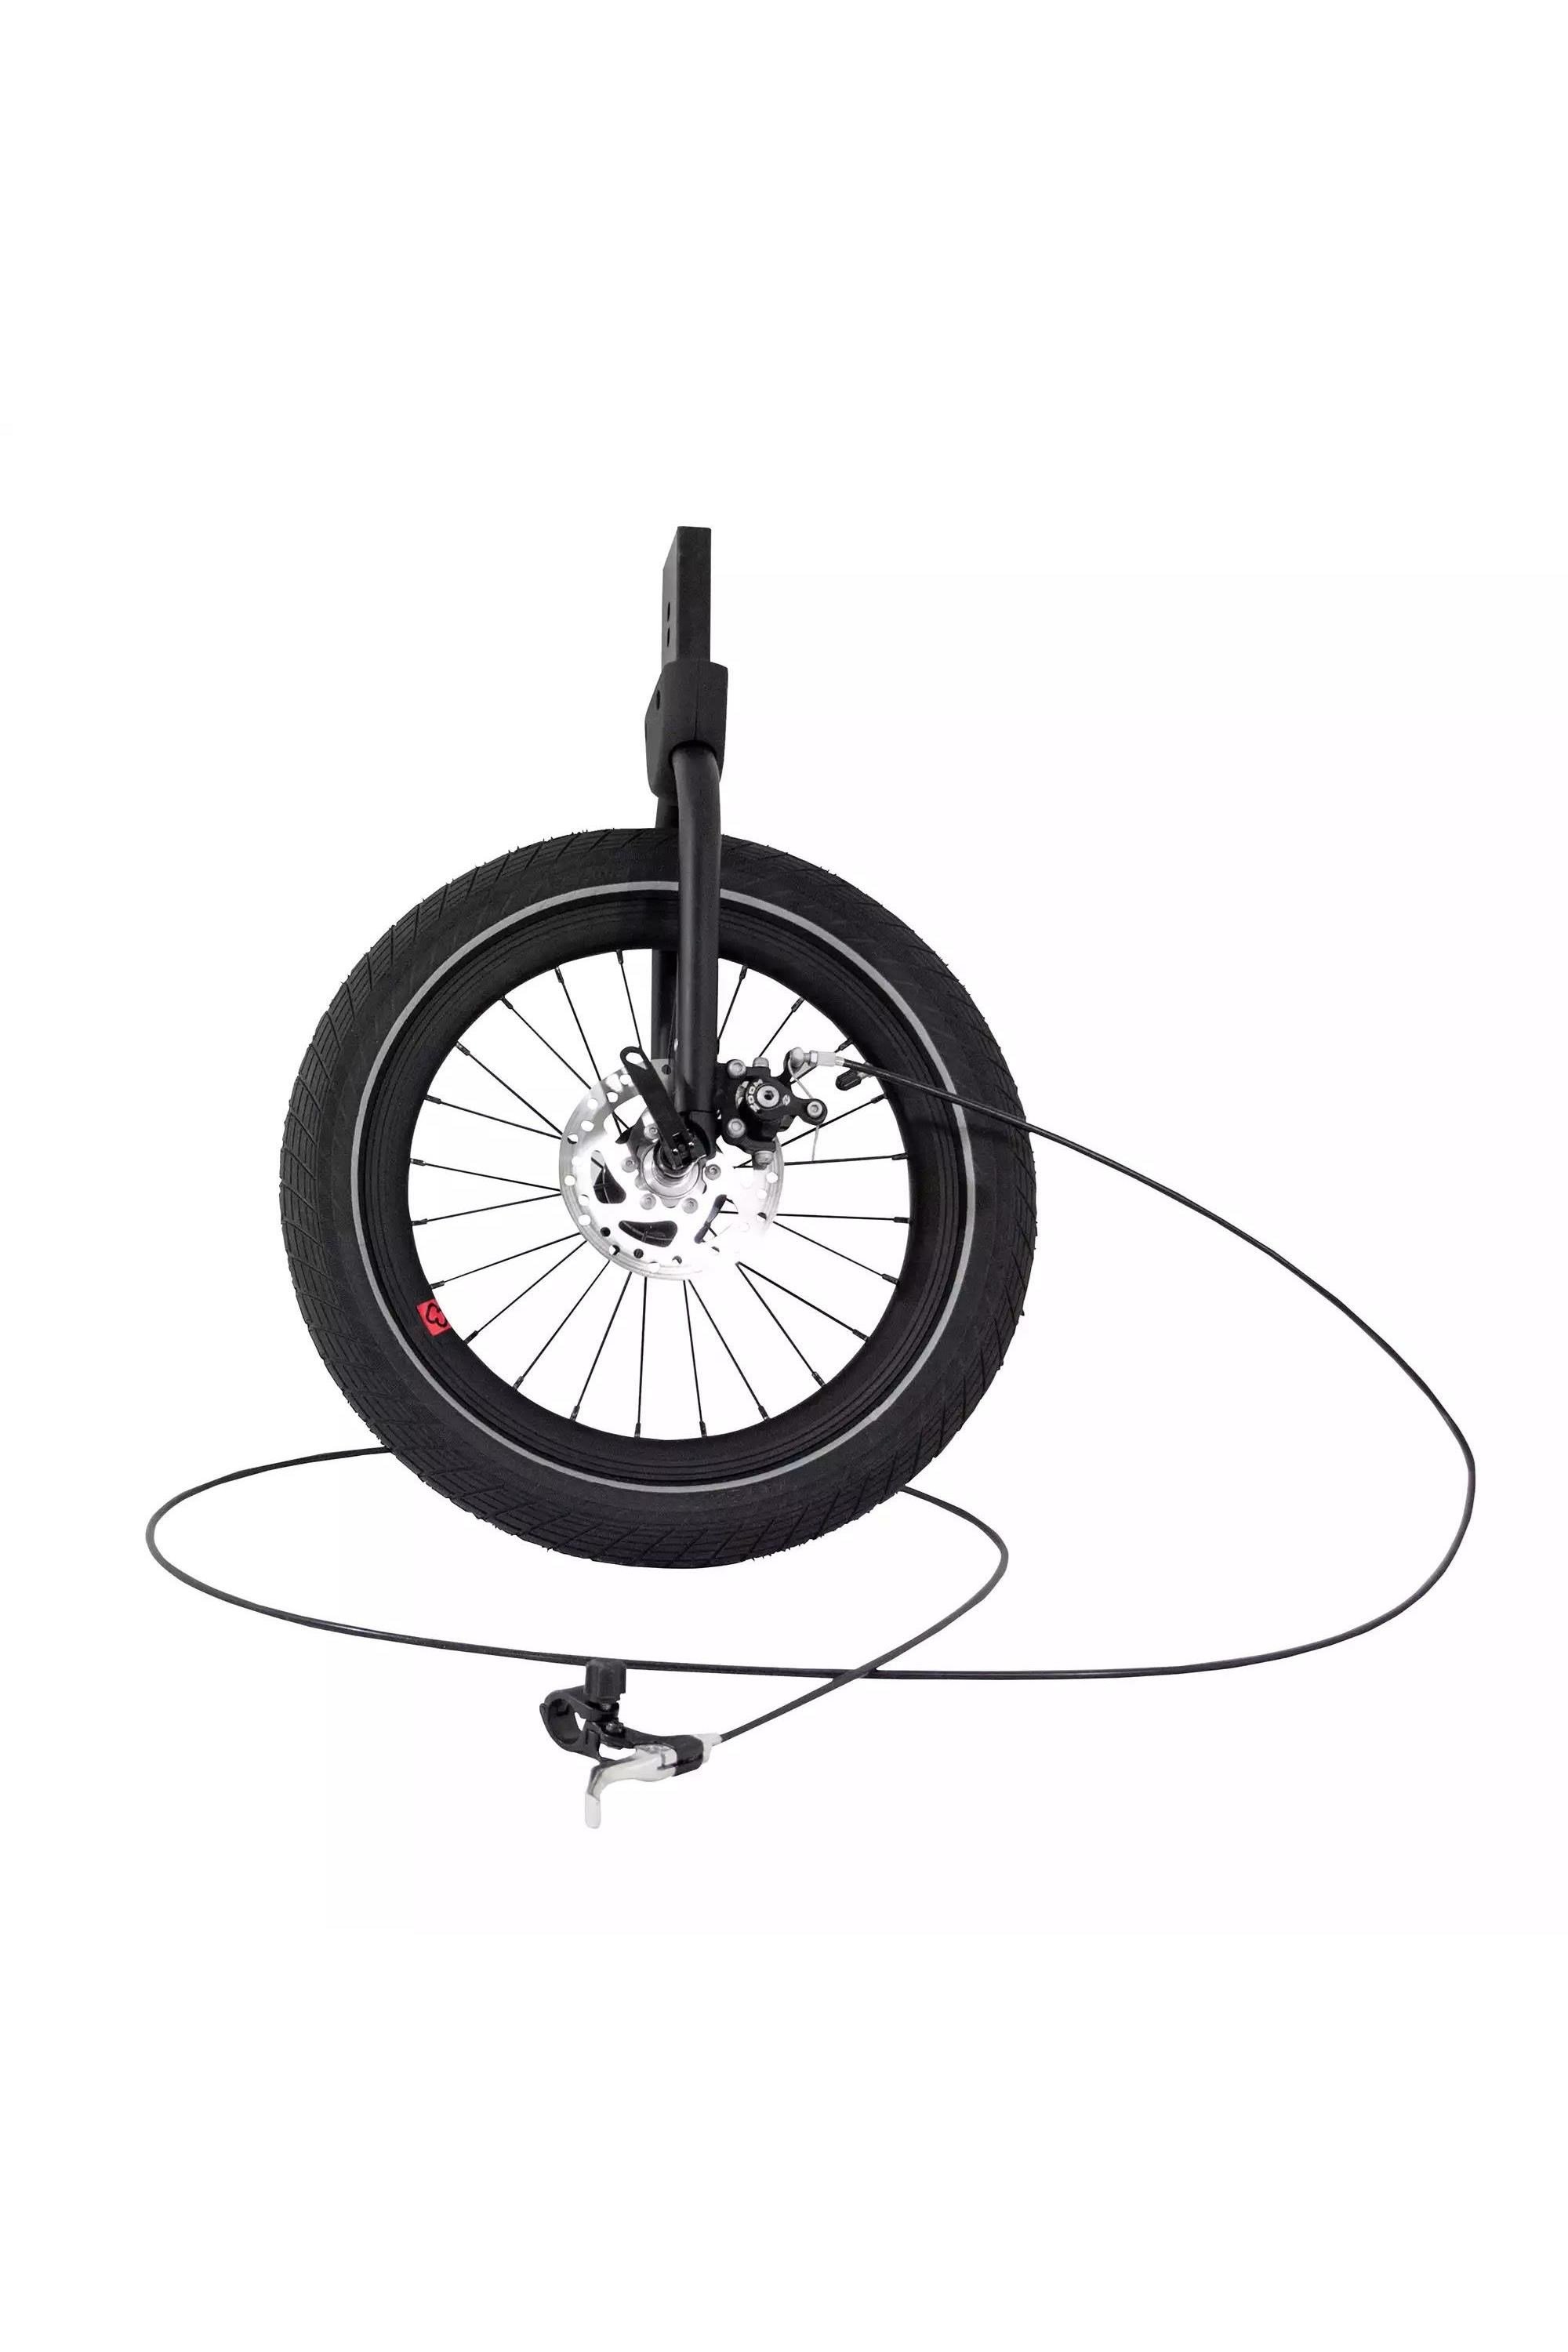 Outback Adjustable Jogger Wheel Kit -